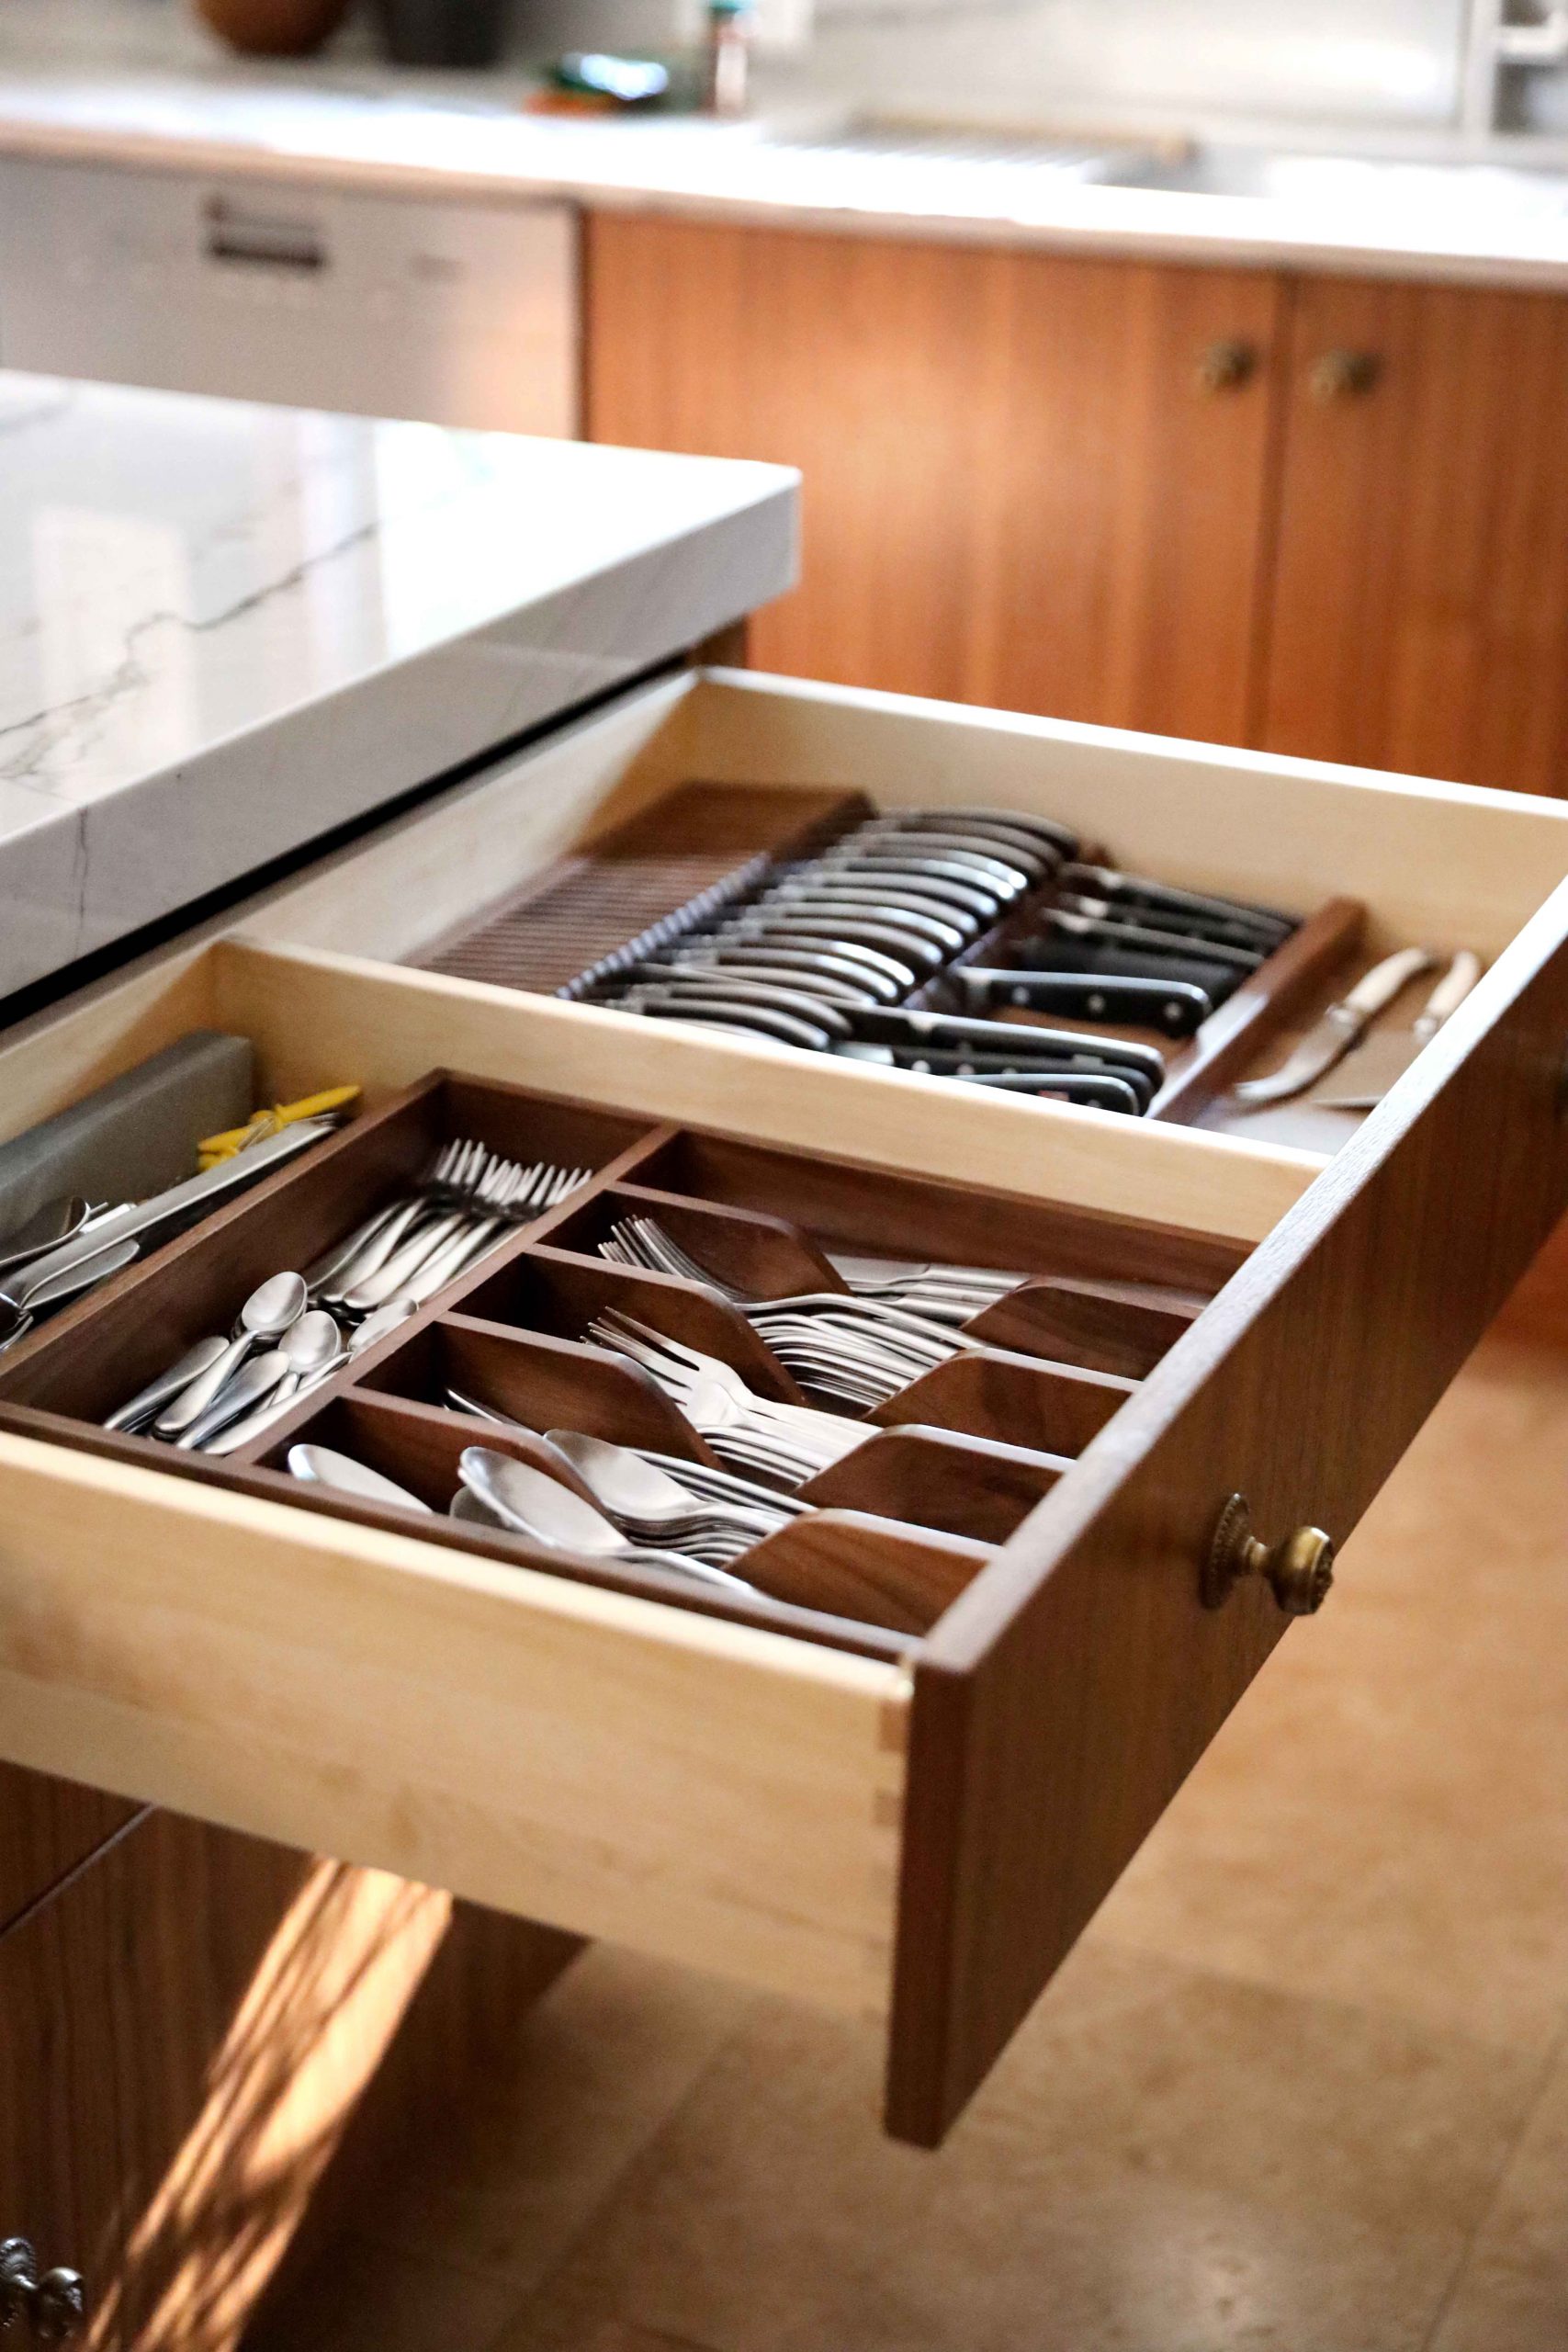 Cutlery divider drawer